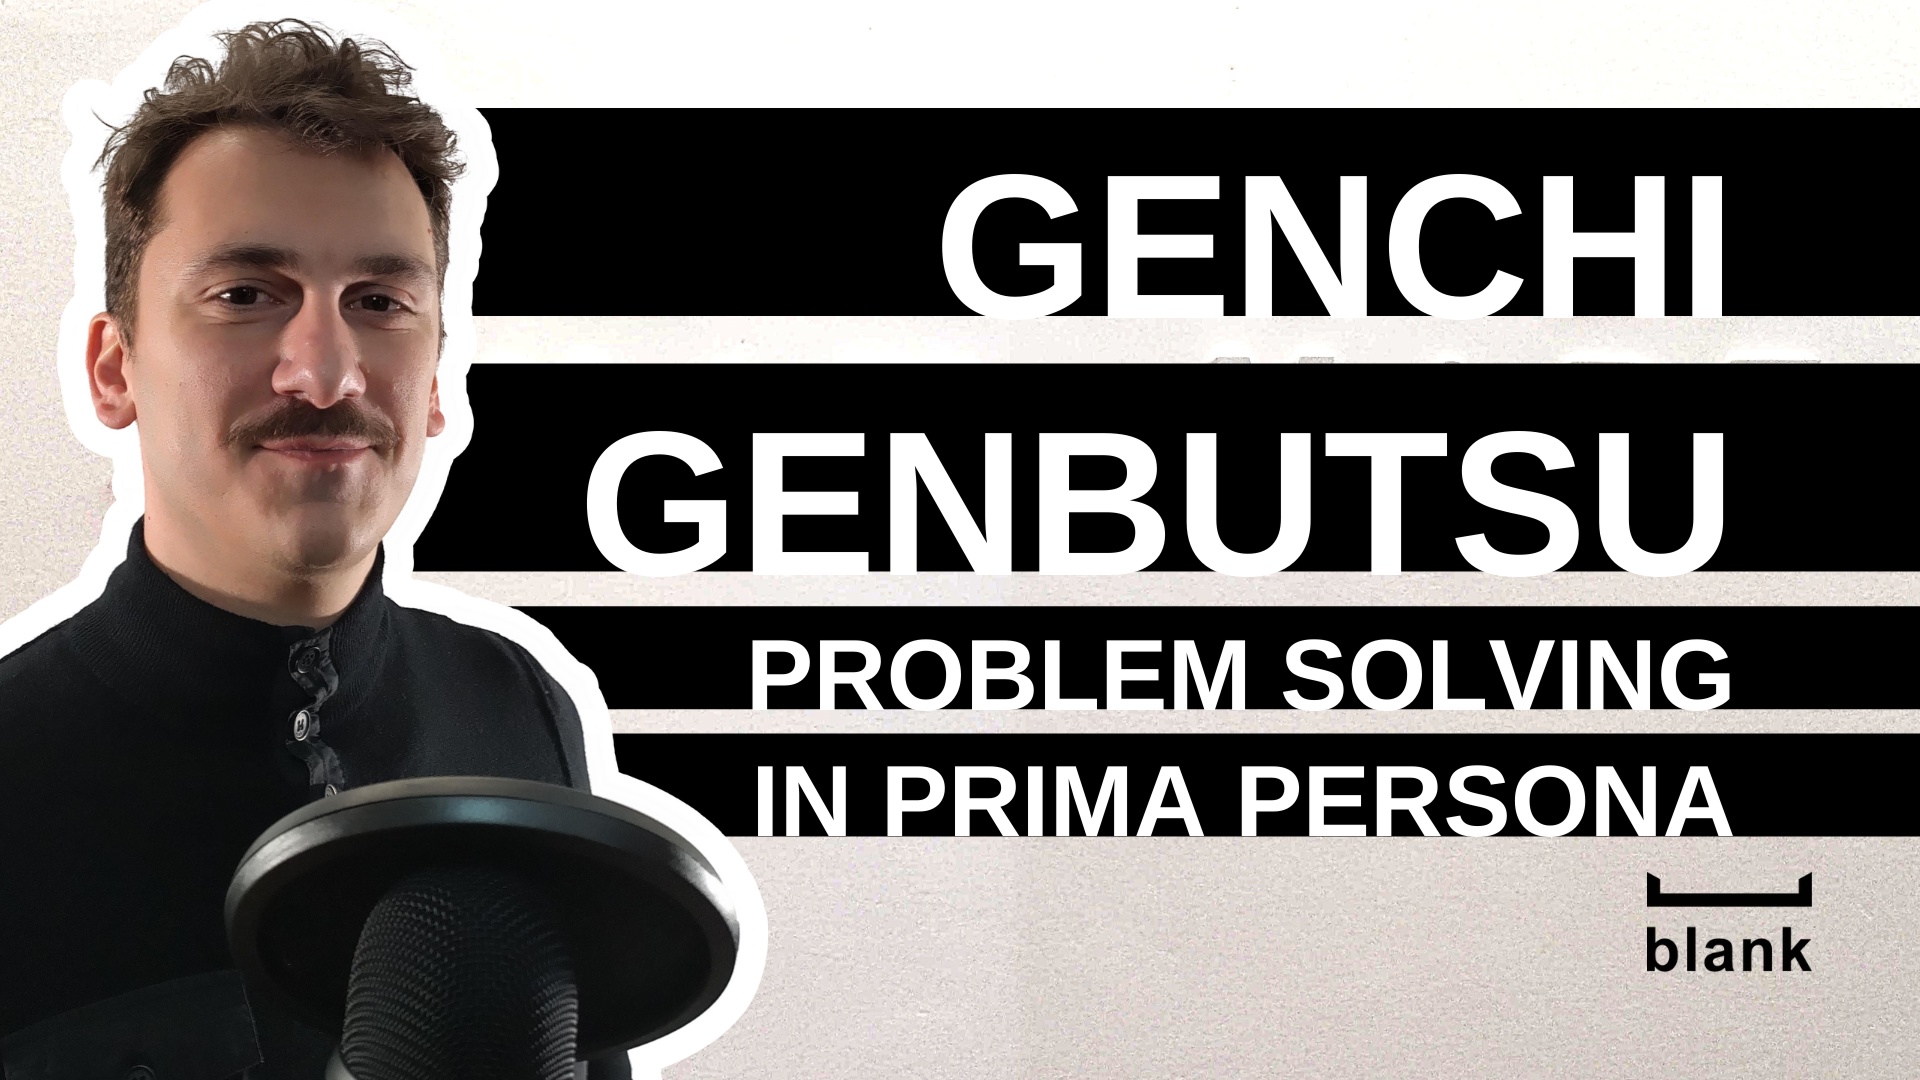 Genchi Genbutsu: problem solving in prima persona